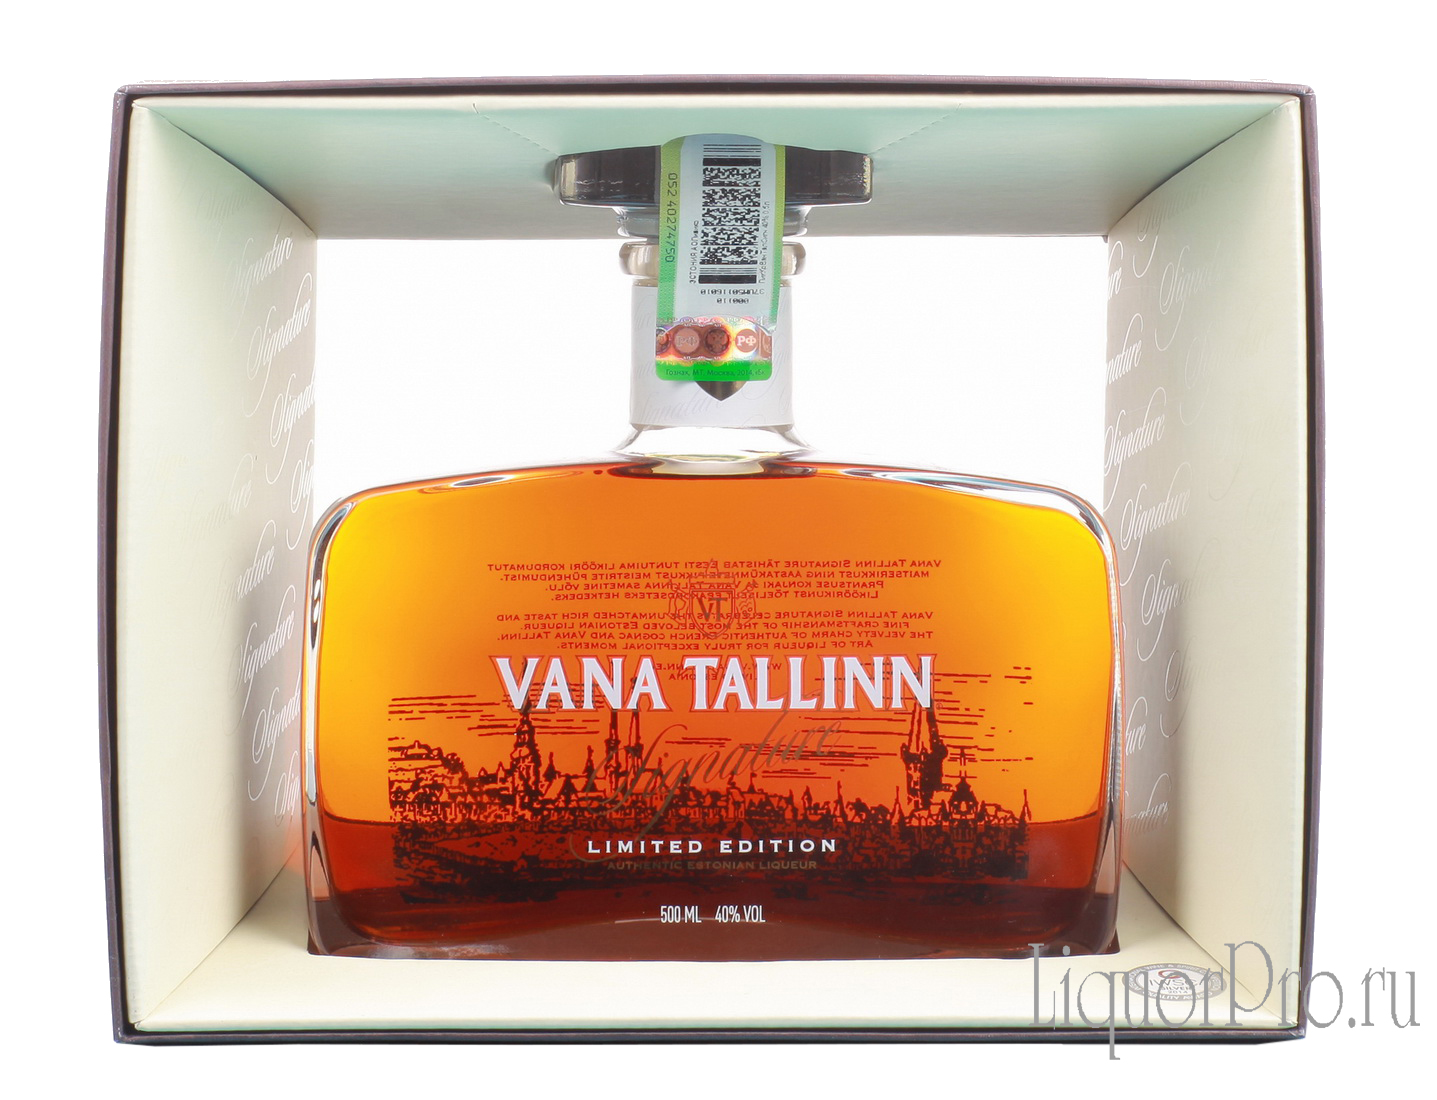 Vana Tallinn Singature Limited Edition ликер Вана Таллин Сигнатур